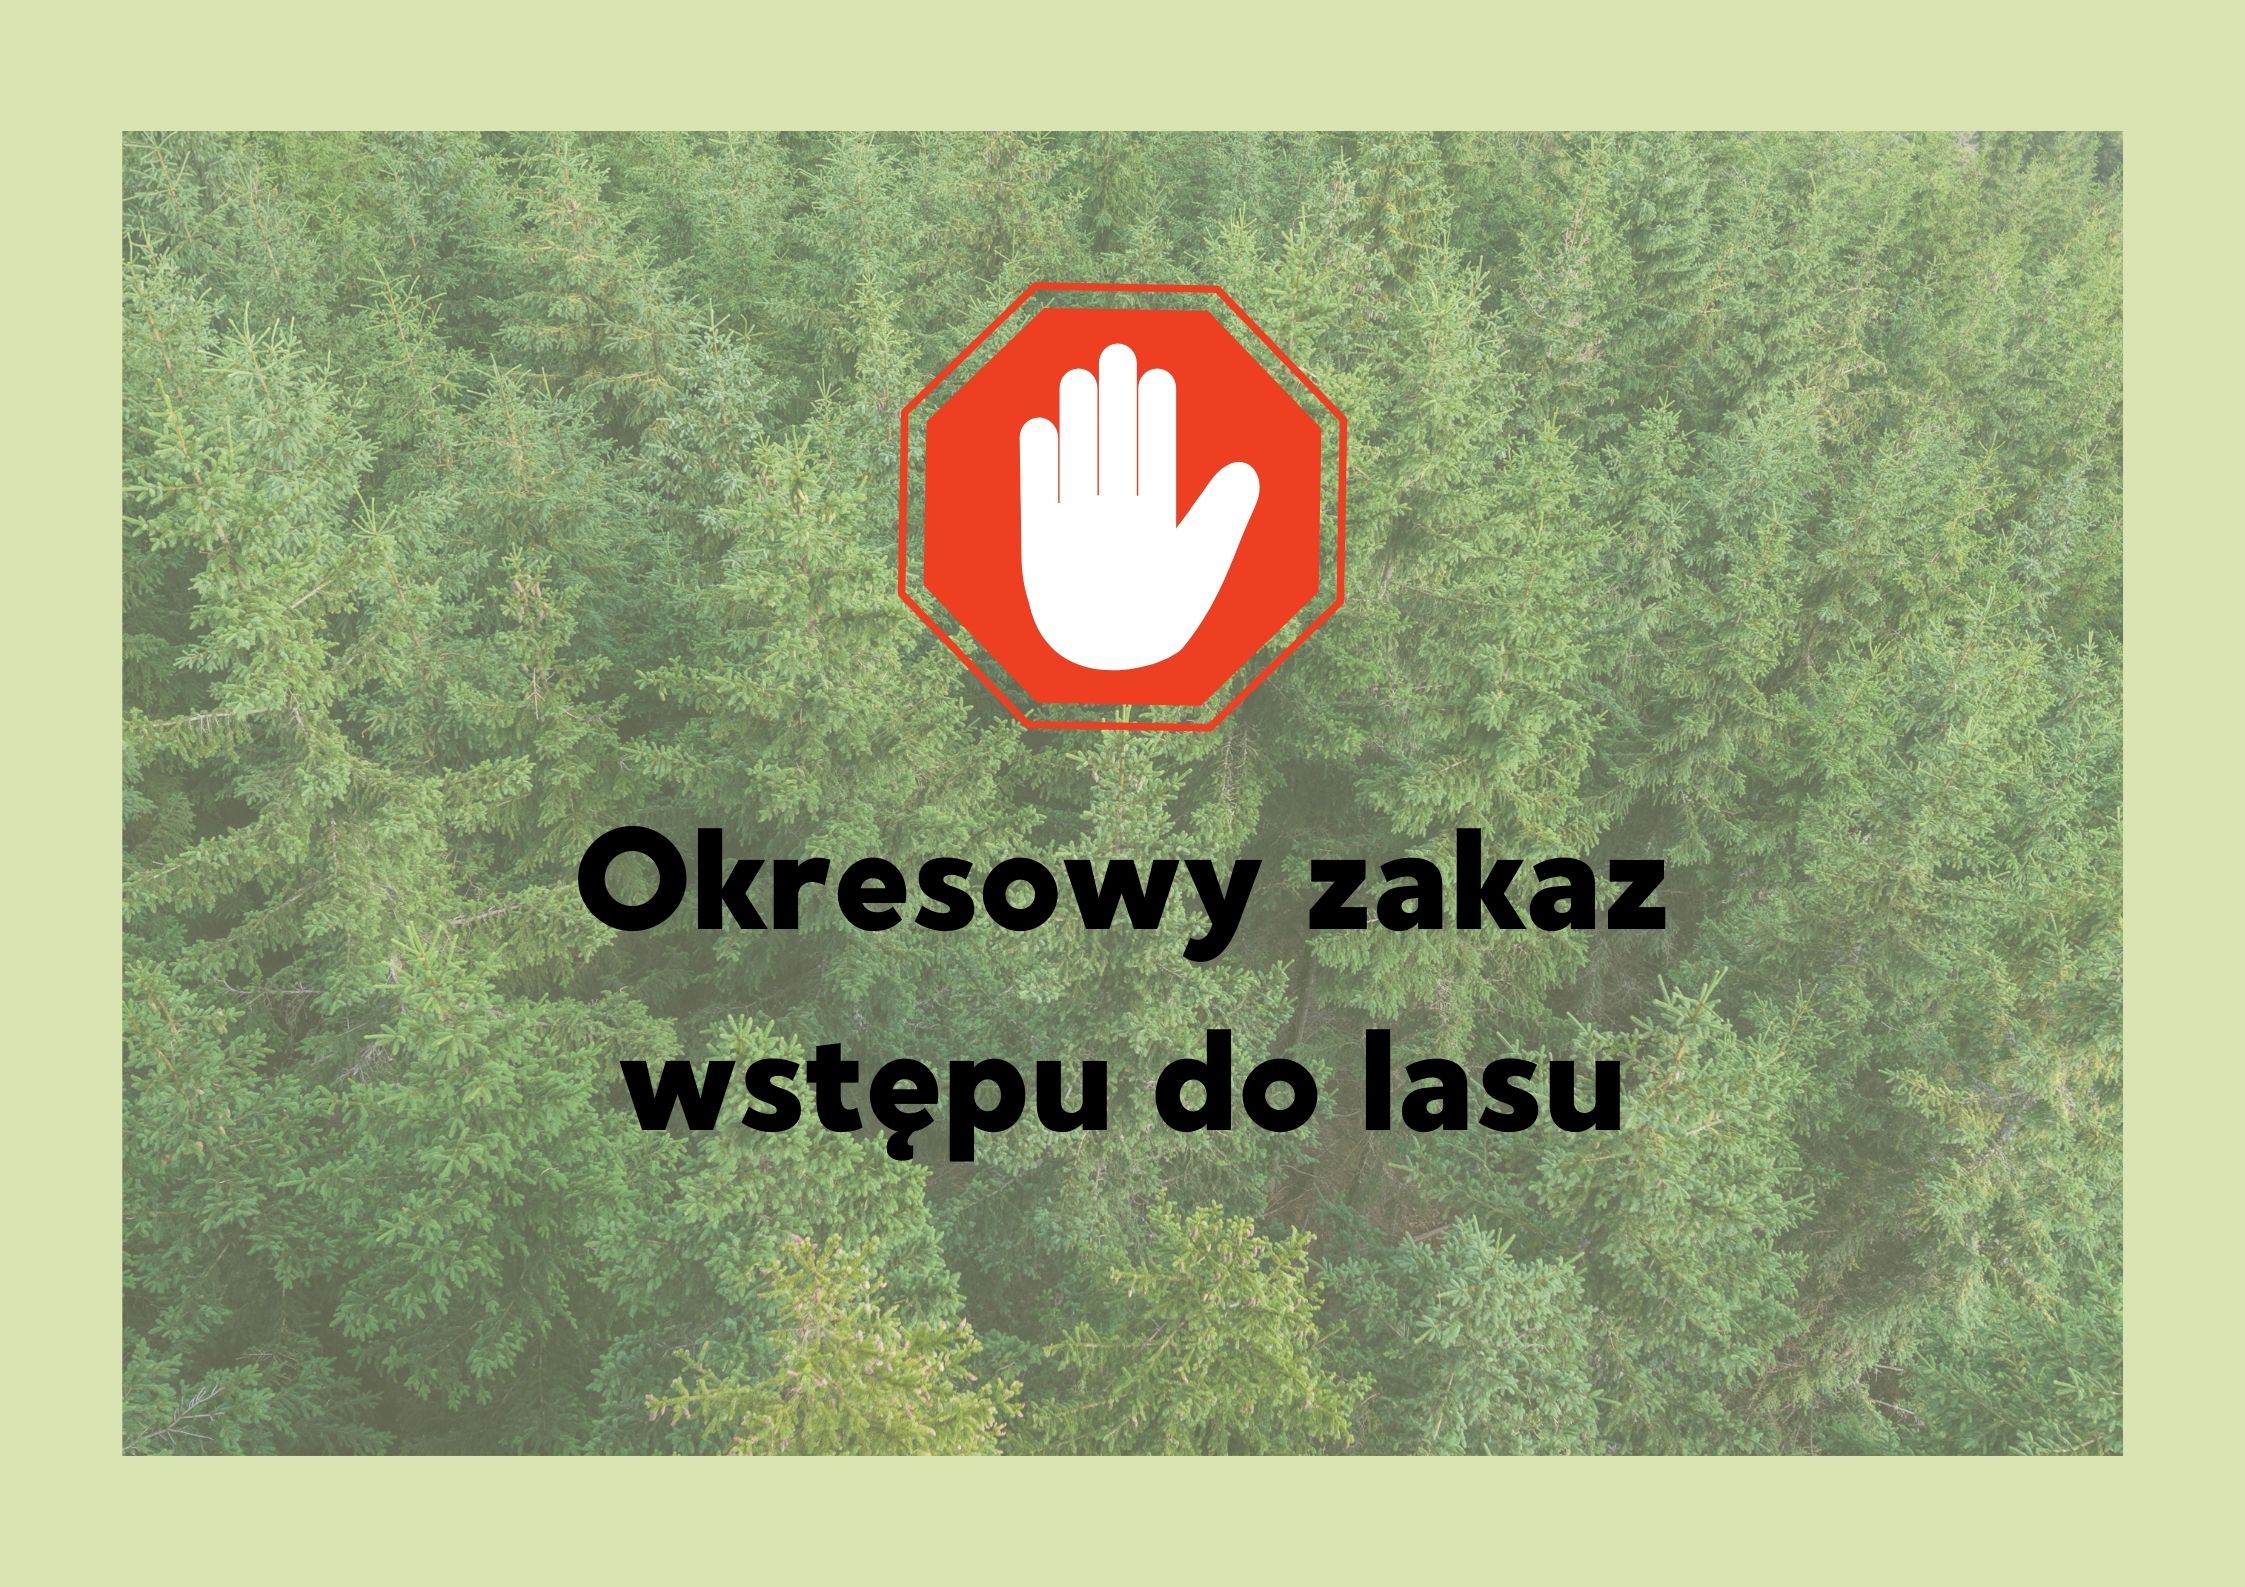 zakaz wstępu do lasu znak graficzny zakazu na tle lasu